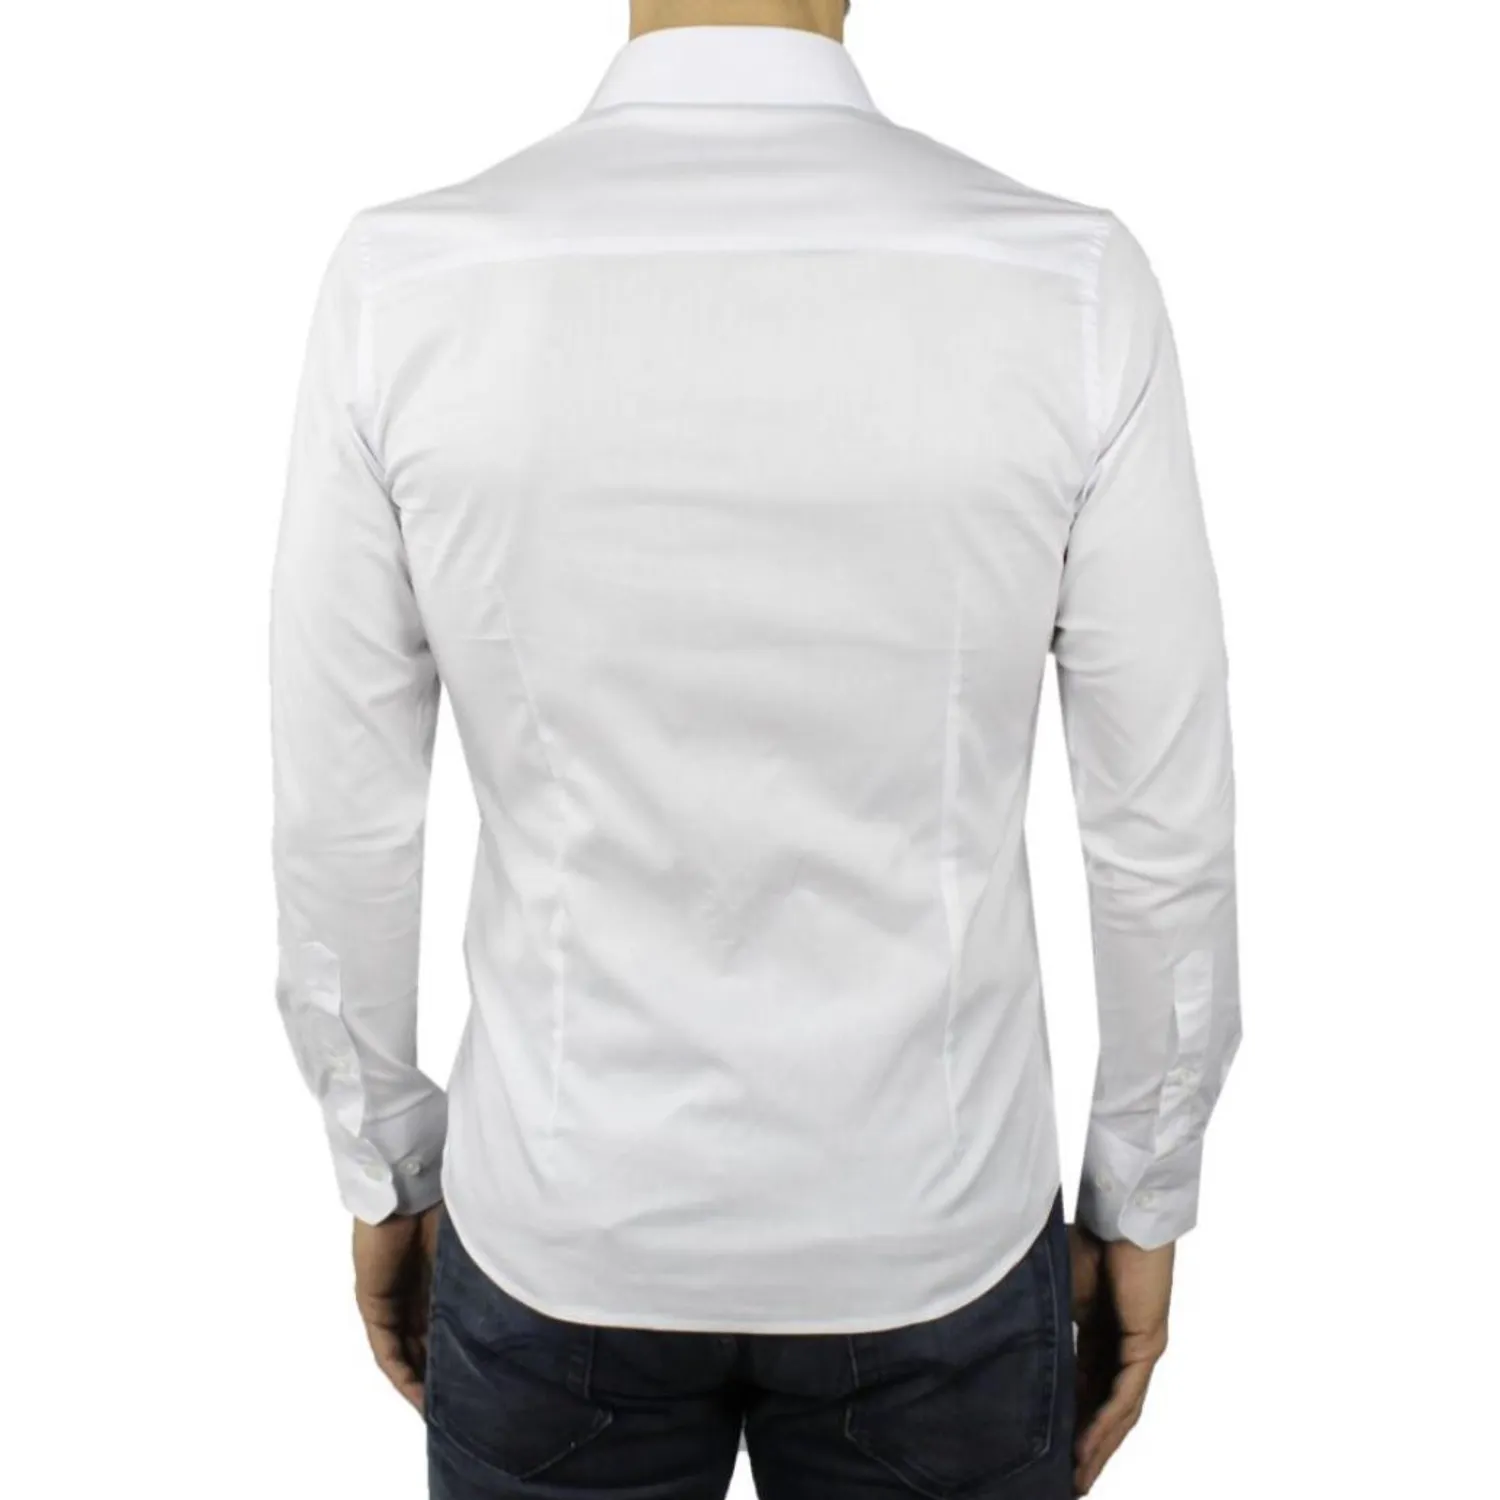 Ανδρικό μακρυμάνικο πουκάμισο μονόχρωμο λευκό